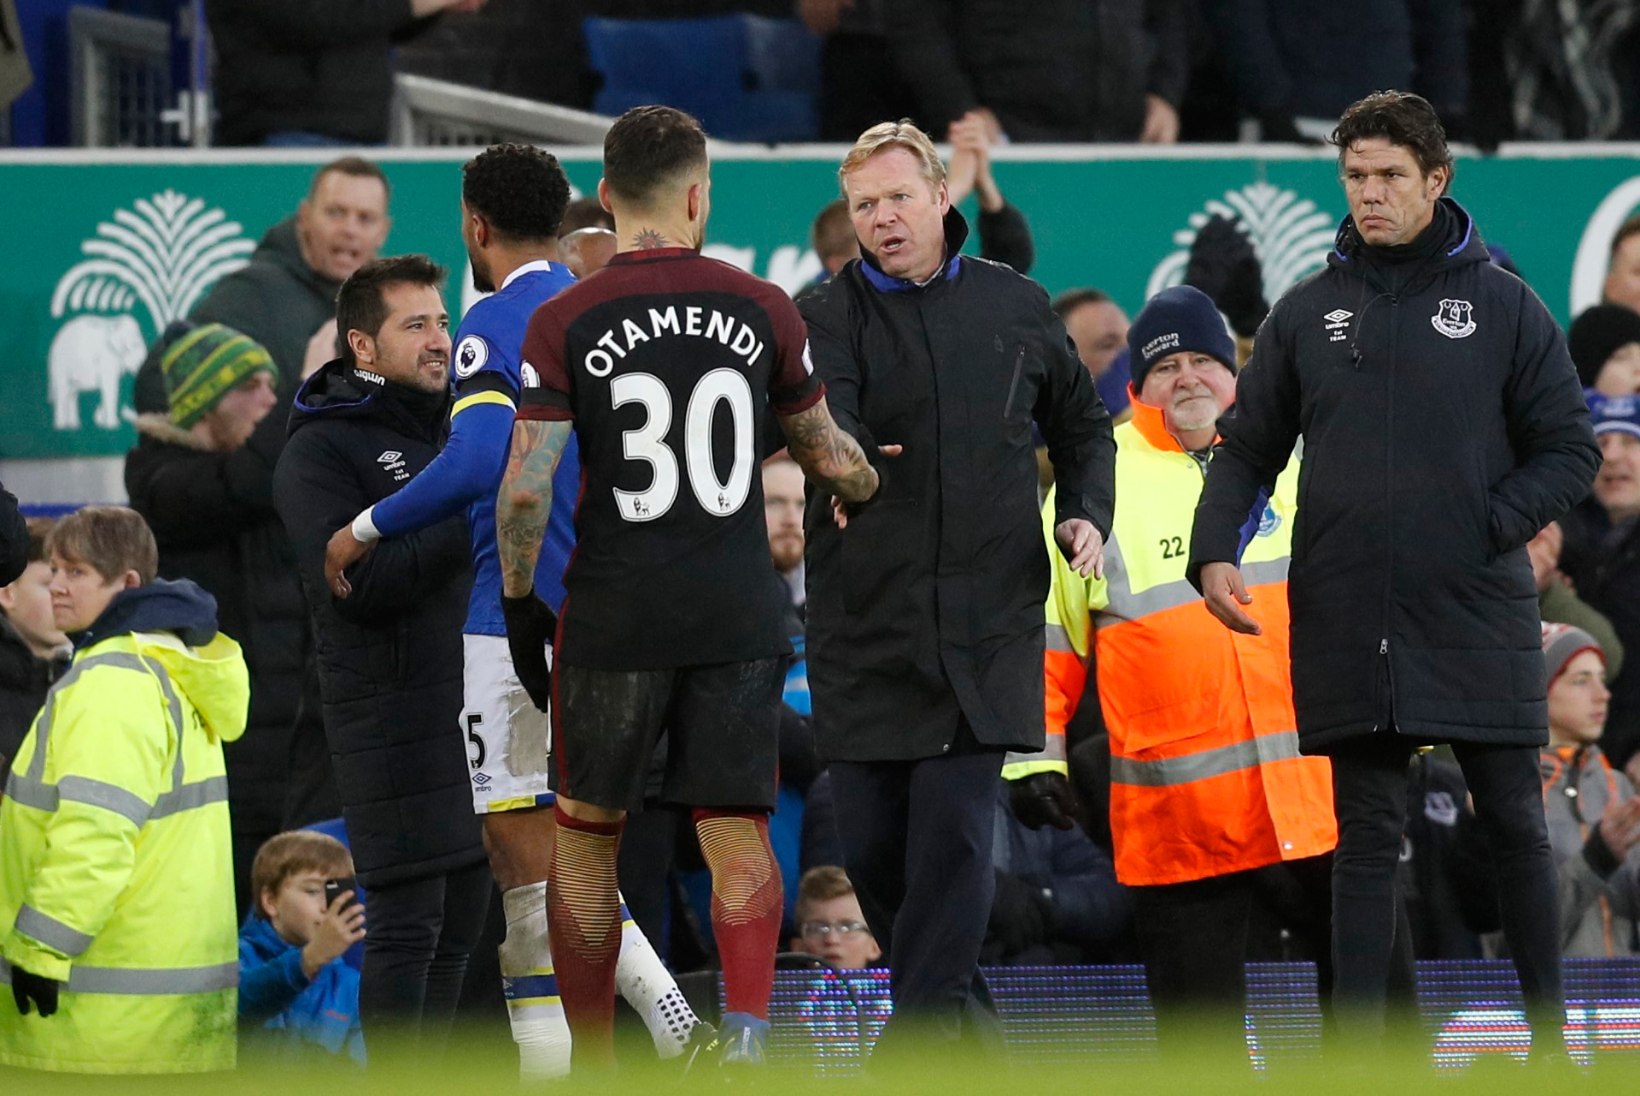 GALERII | Uskumatu mäng: Manchester City näitas võimsat statistilist üleolekut, kuid sai Evertonilt hirmsa koslepi 